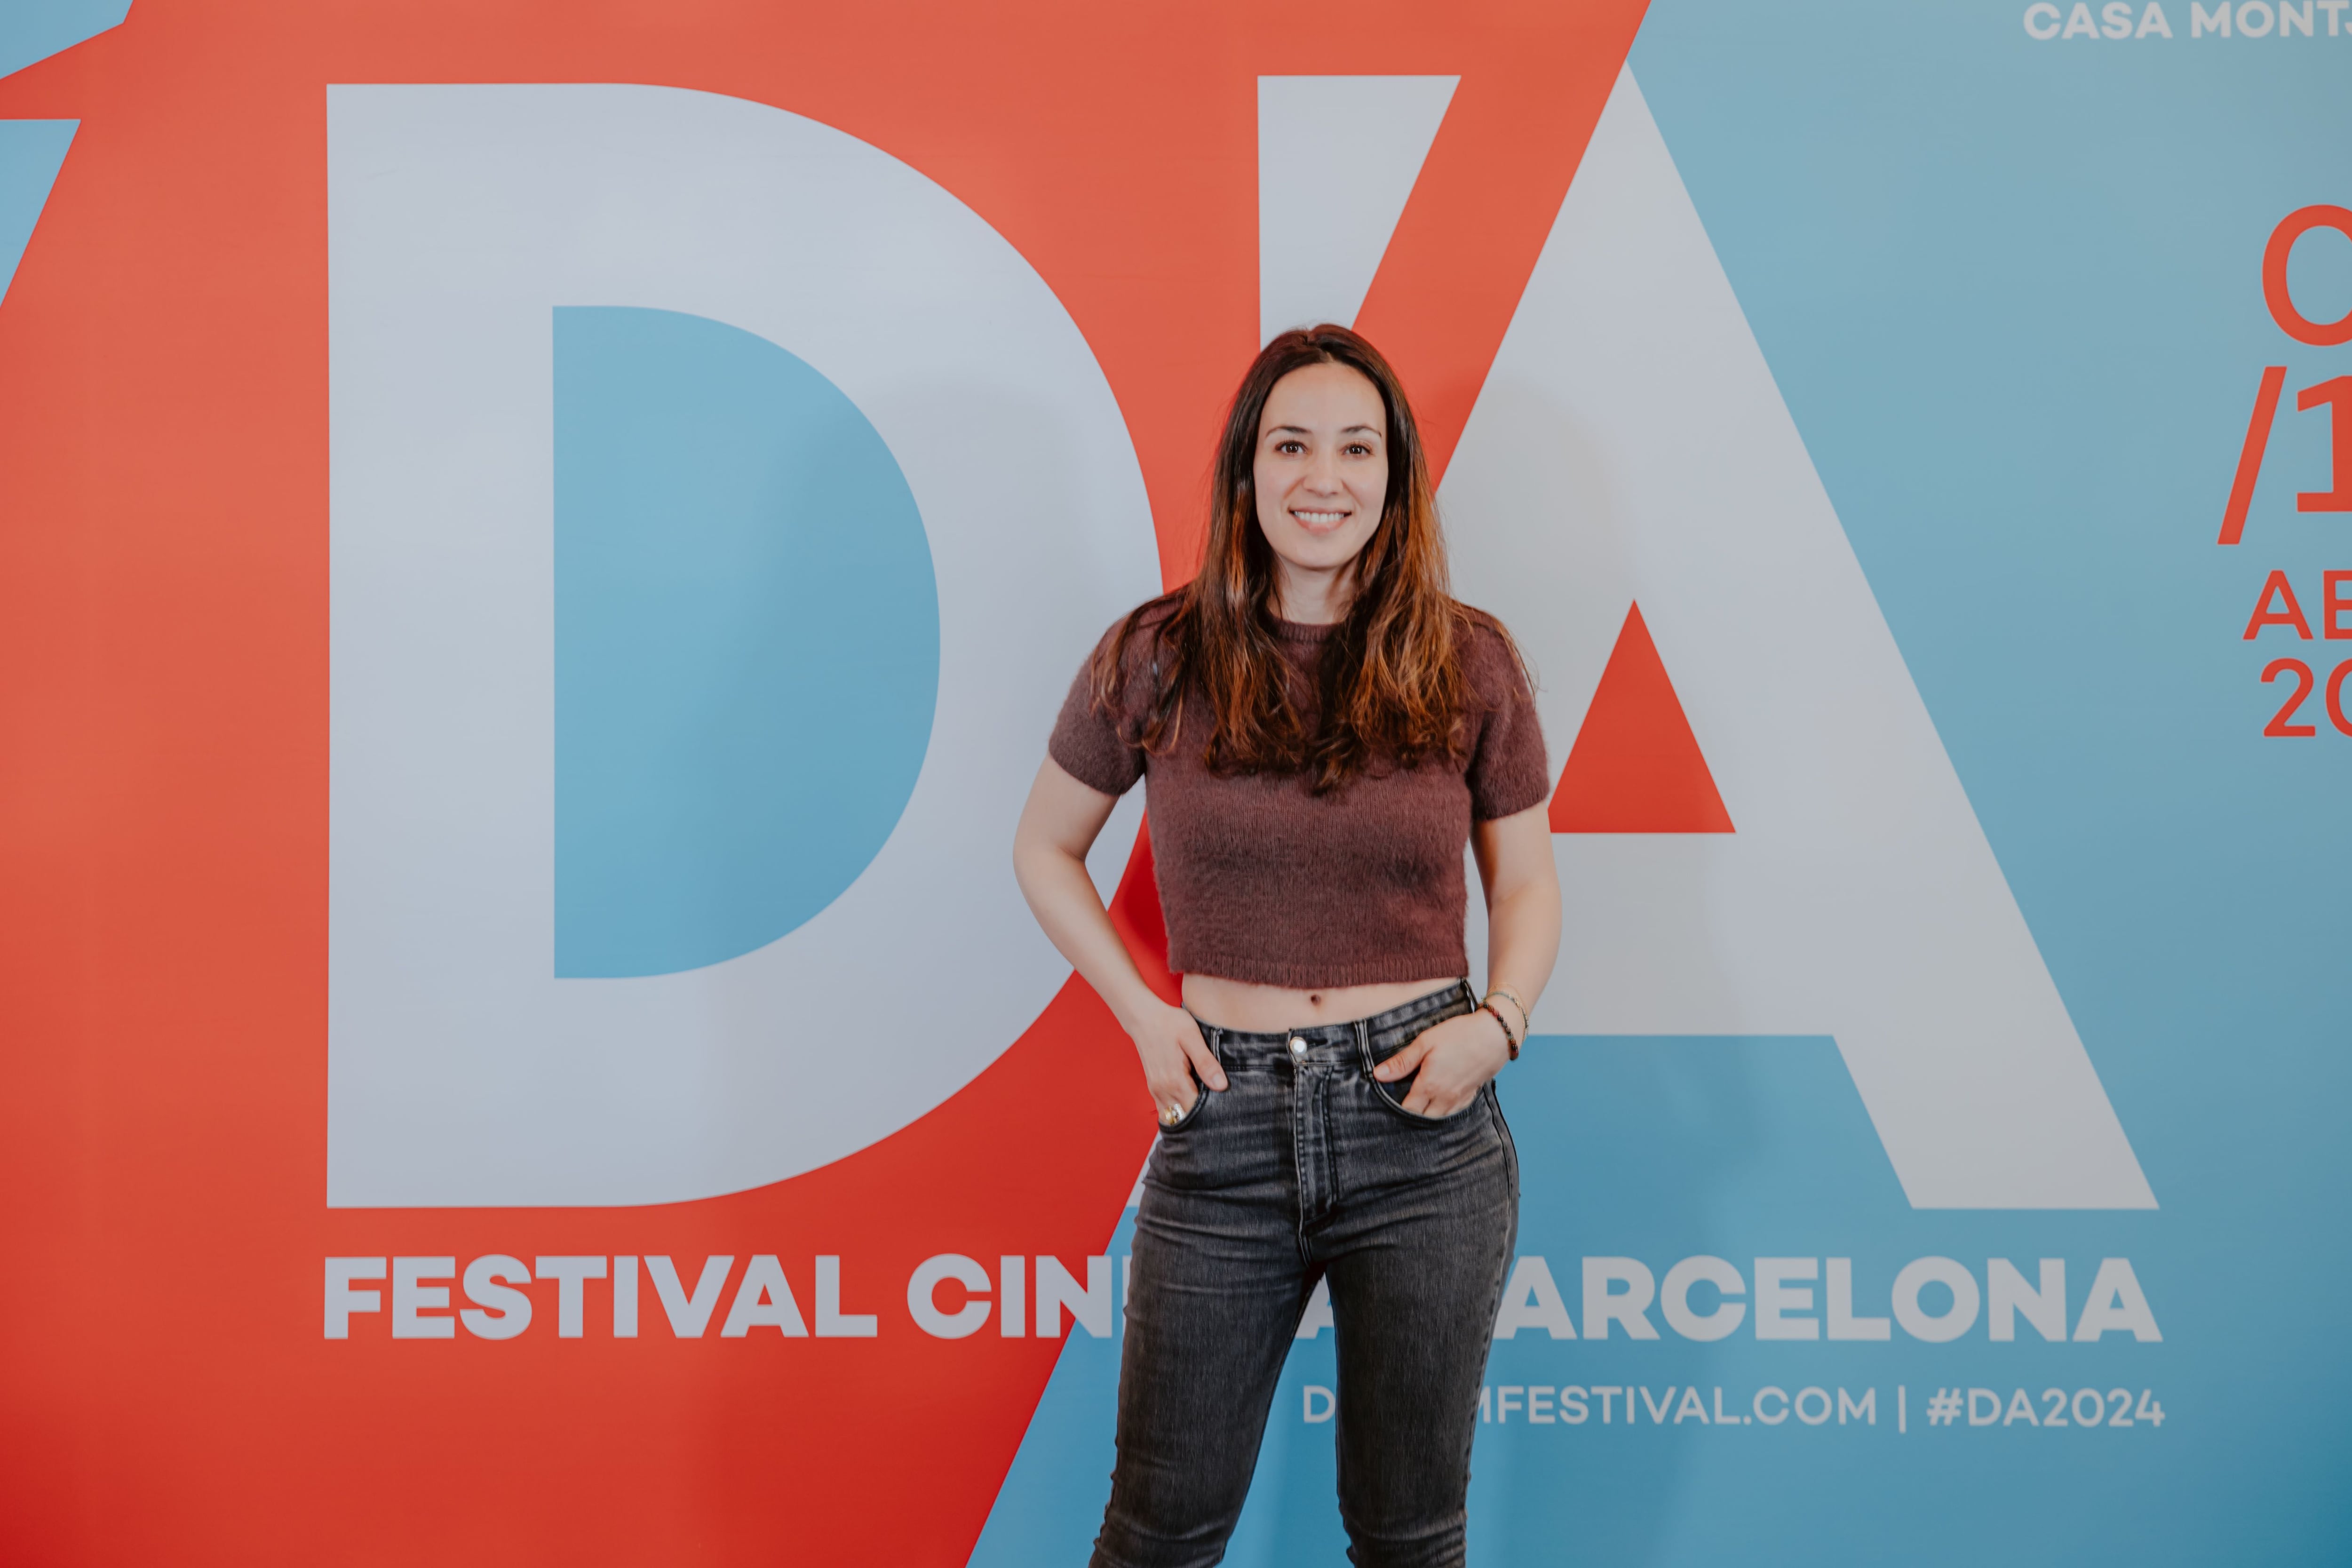 La directora Nora el Hourch en la presentación de 'HLM Pussy' en el D'A Film Festival Barcelona (Clara Orozco)